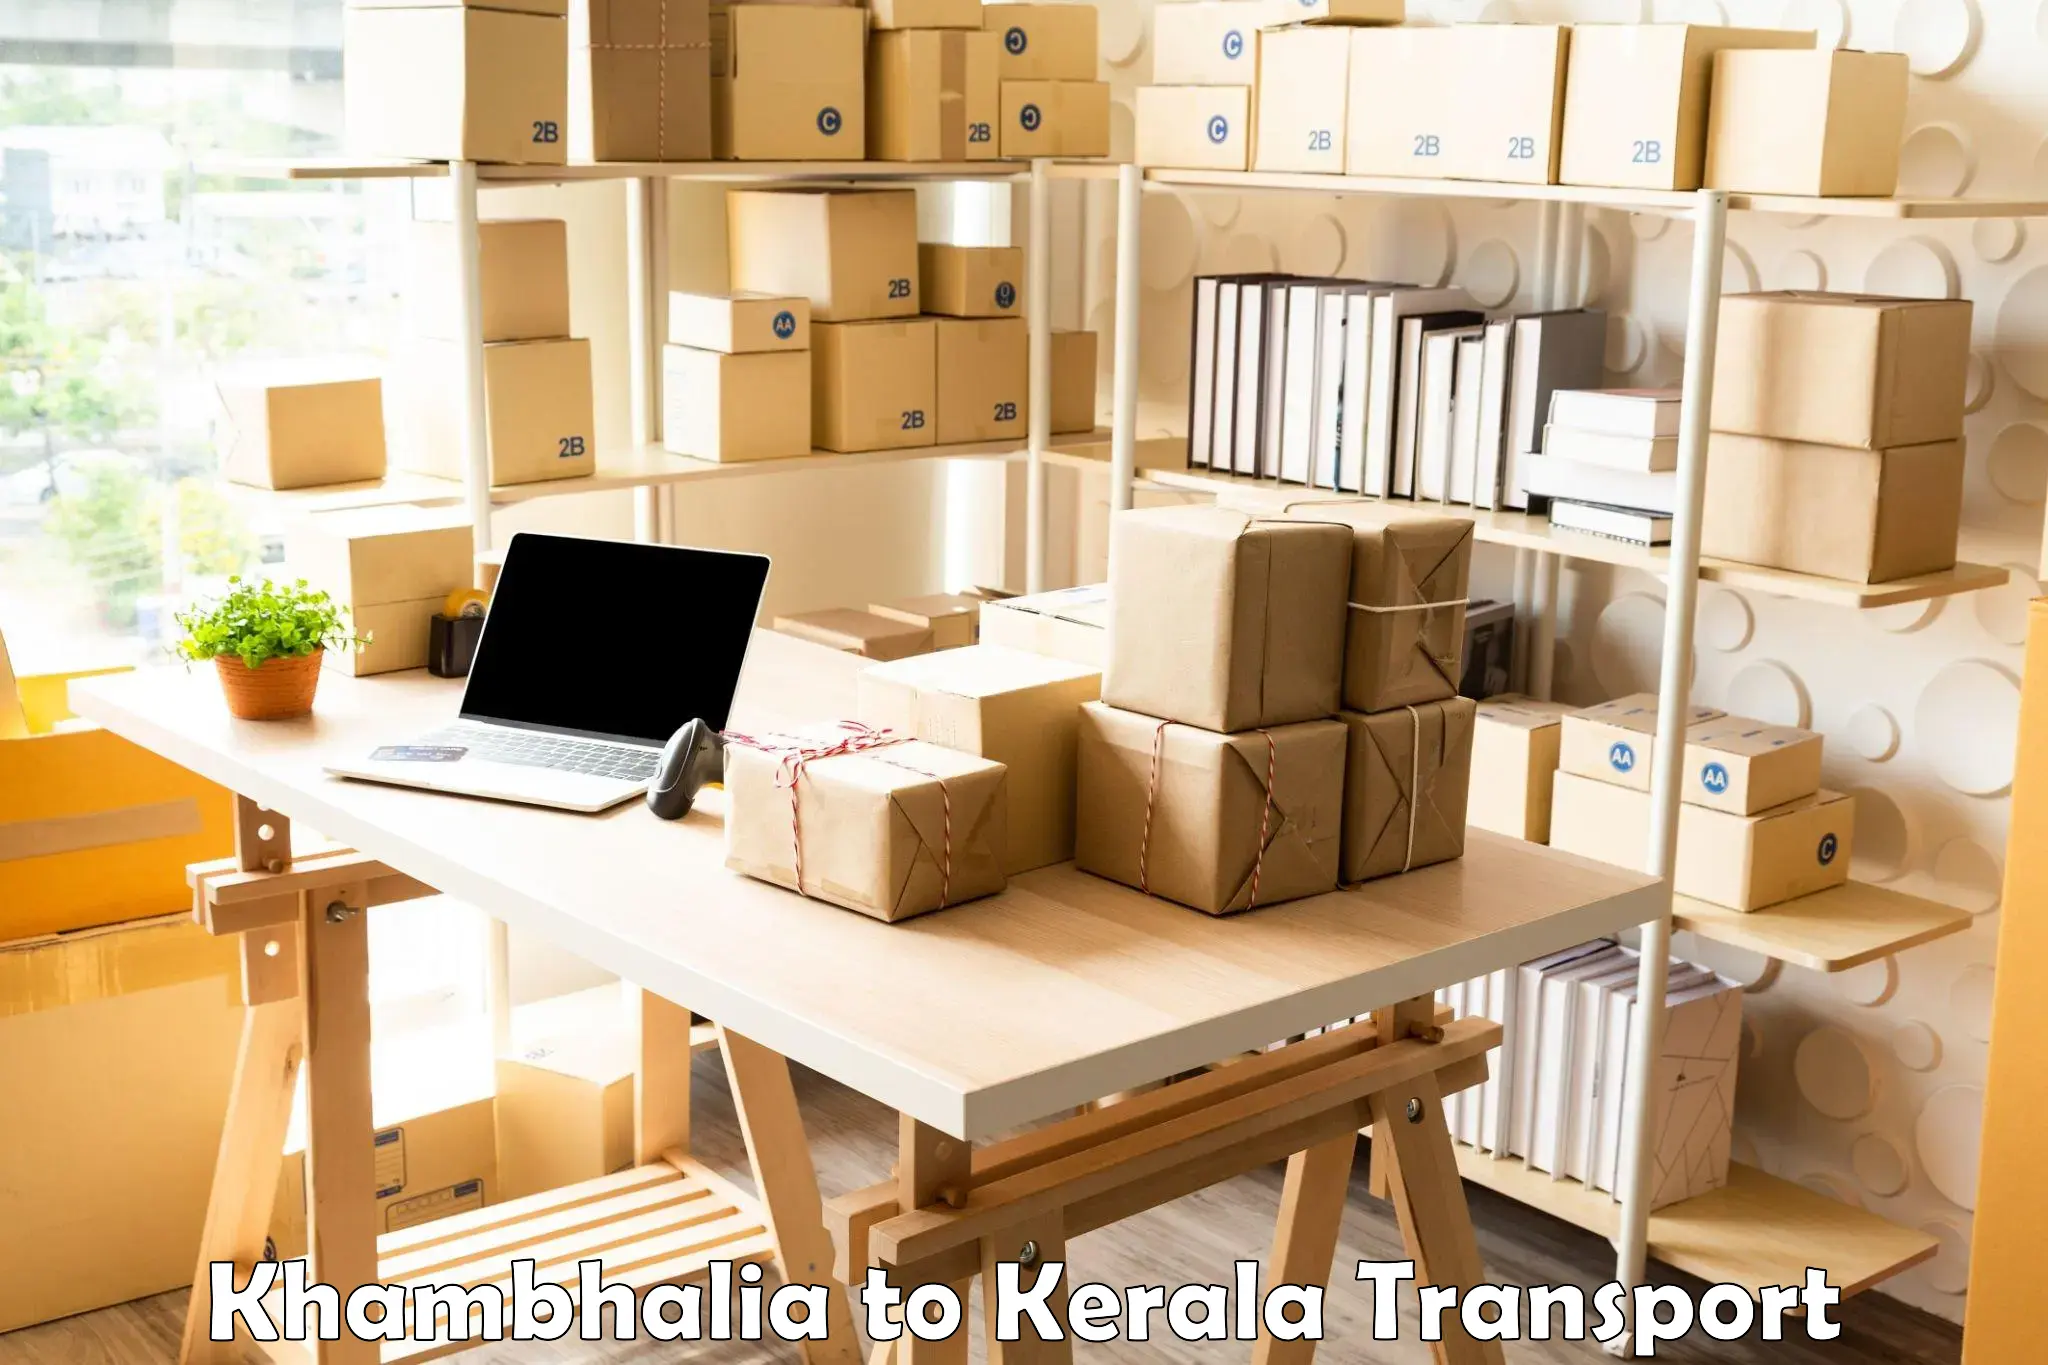 Air freight transport services Khambhalia to IIIT Kottayam